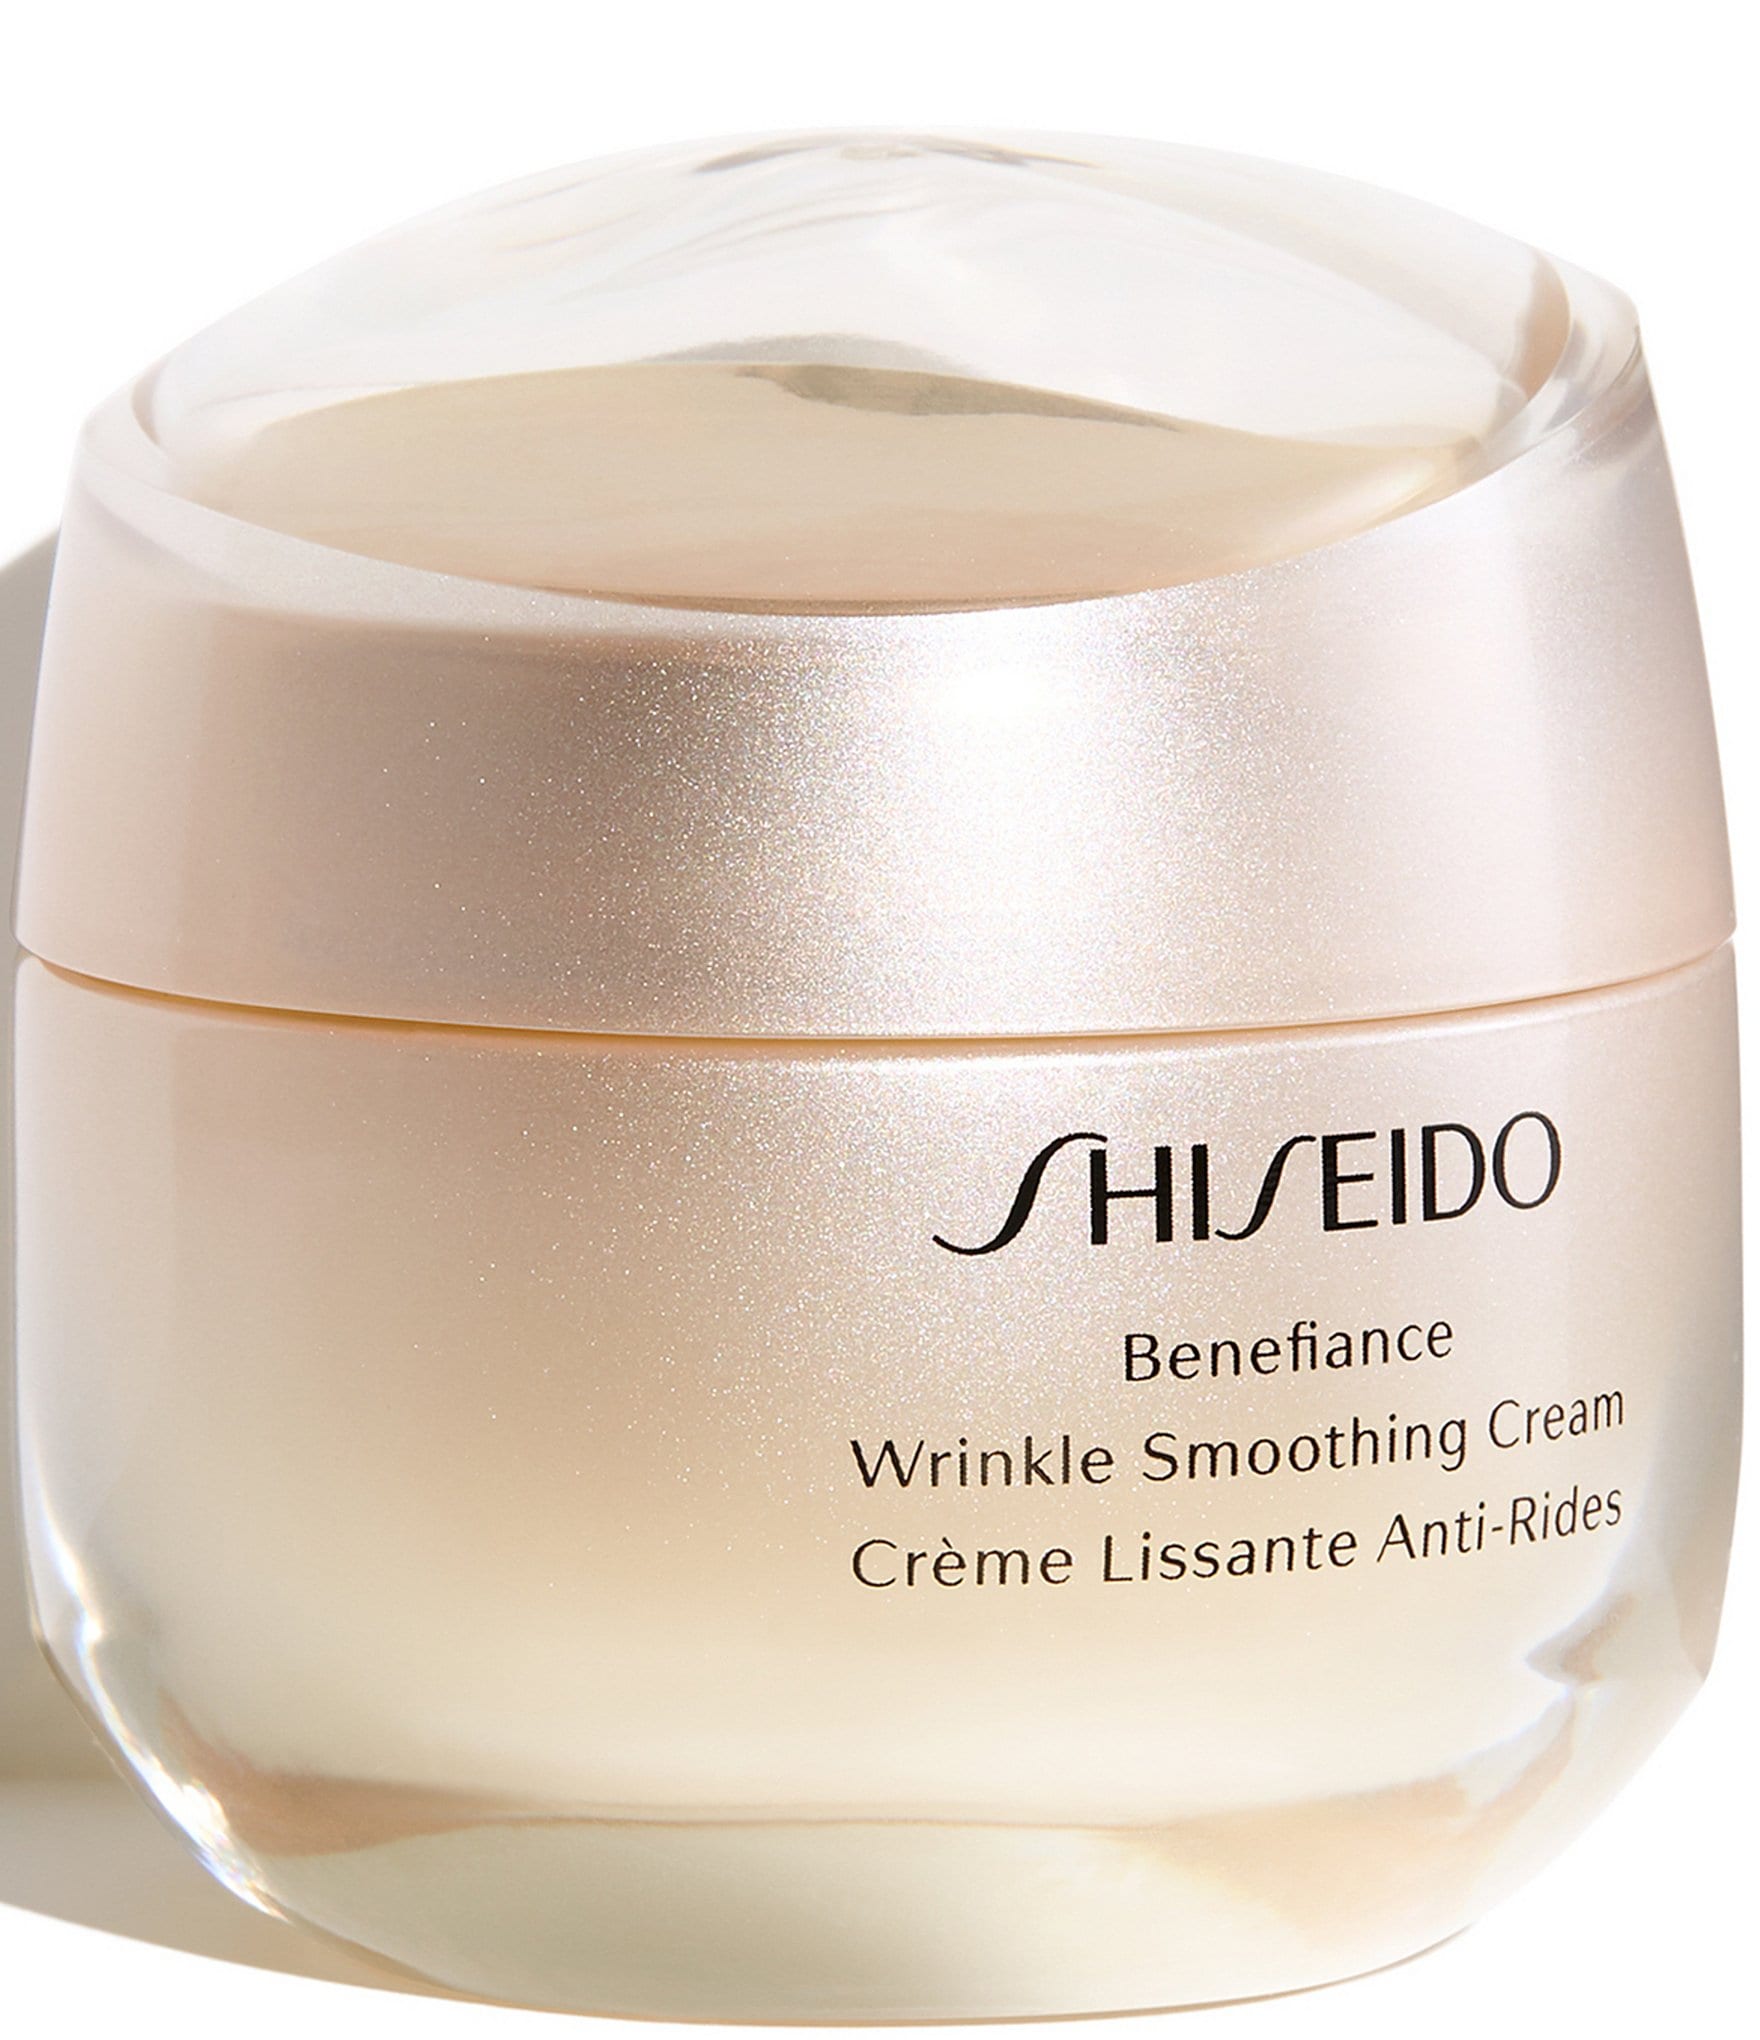 Shiseido benefiance wrinkle smoothing. Крем Shiseido Benefiance. Шисейдо Benefiance Wrinkle Smoothing. Shiseido Wrinkle Smoothing Cream. Набор Shiseido Benefiance.